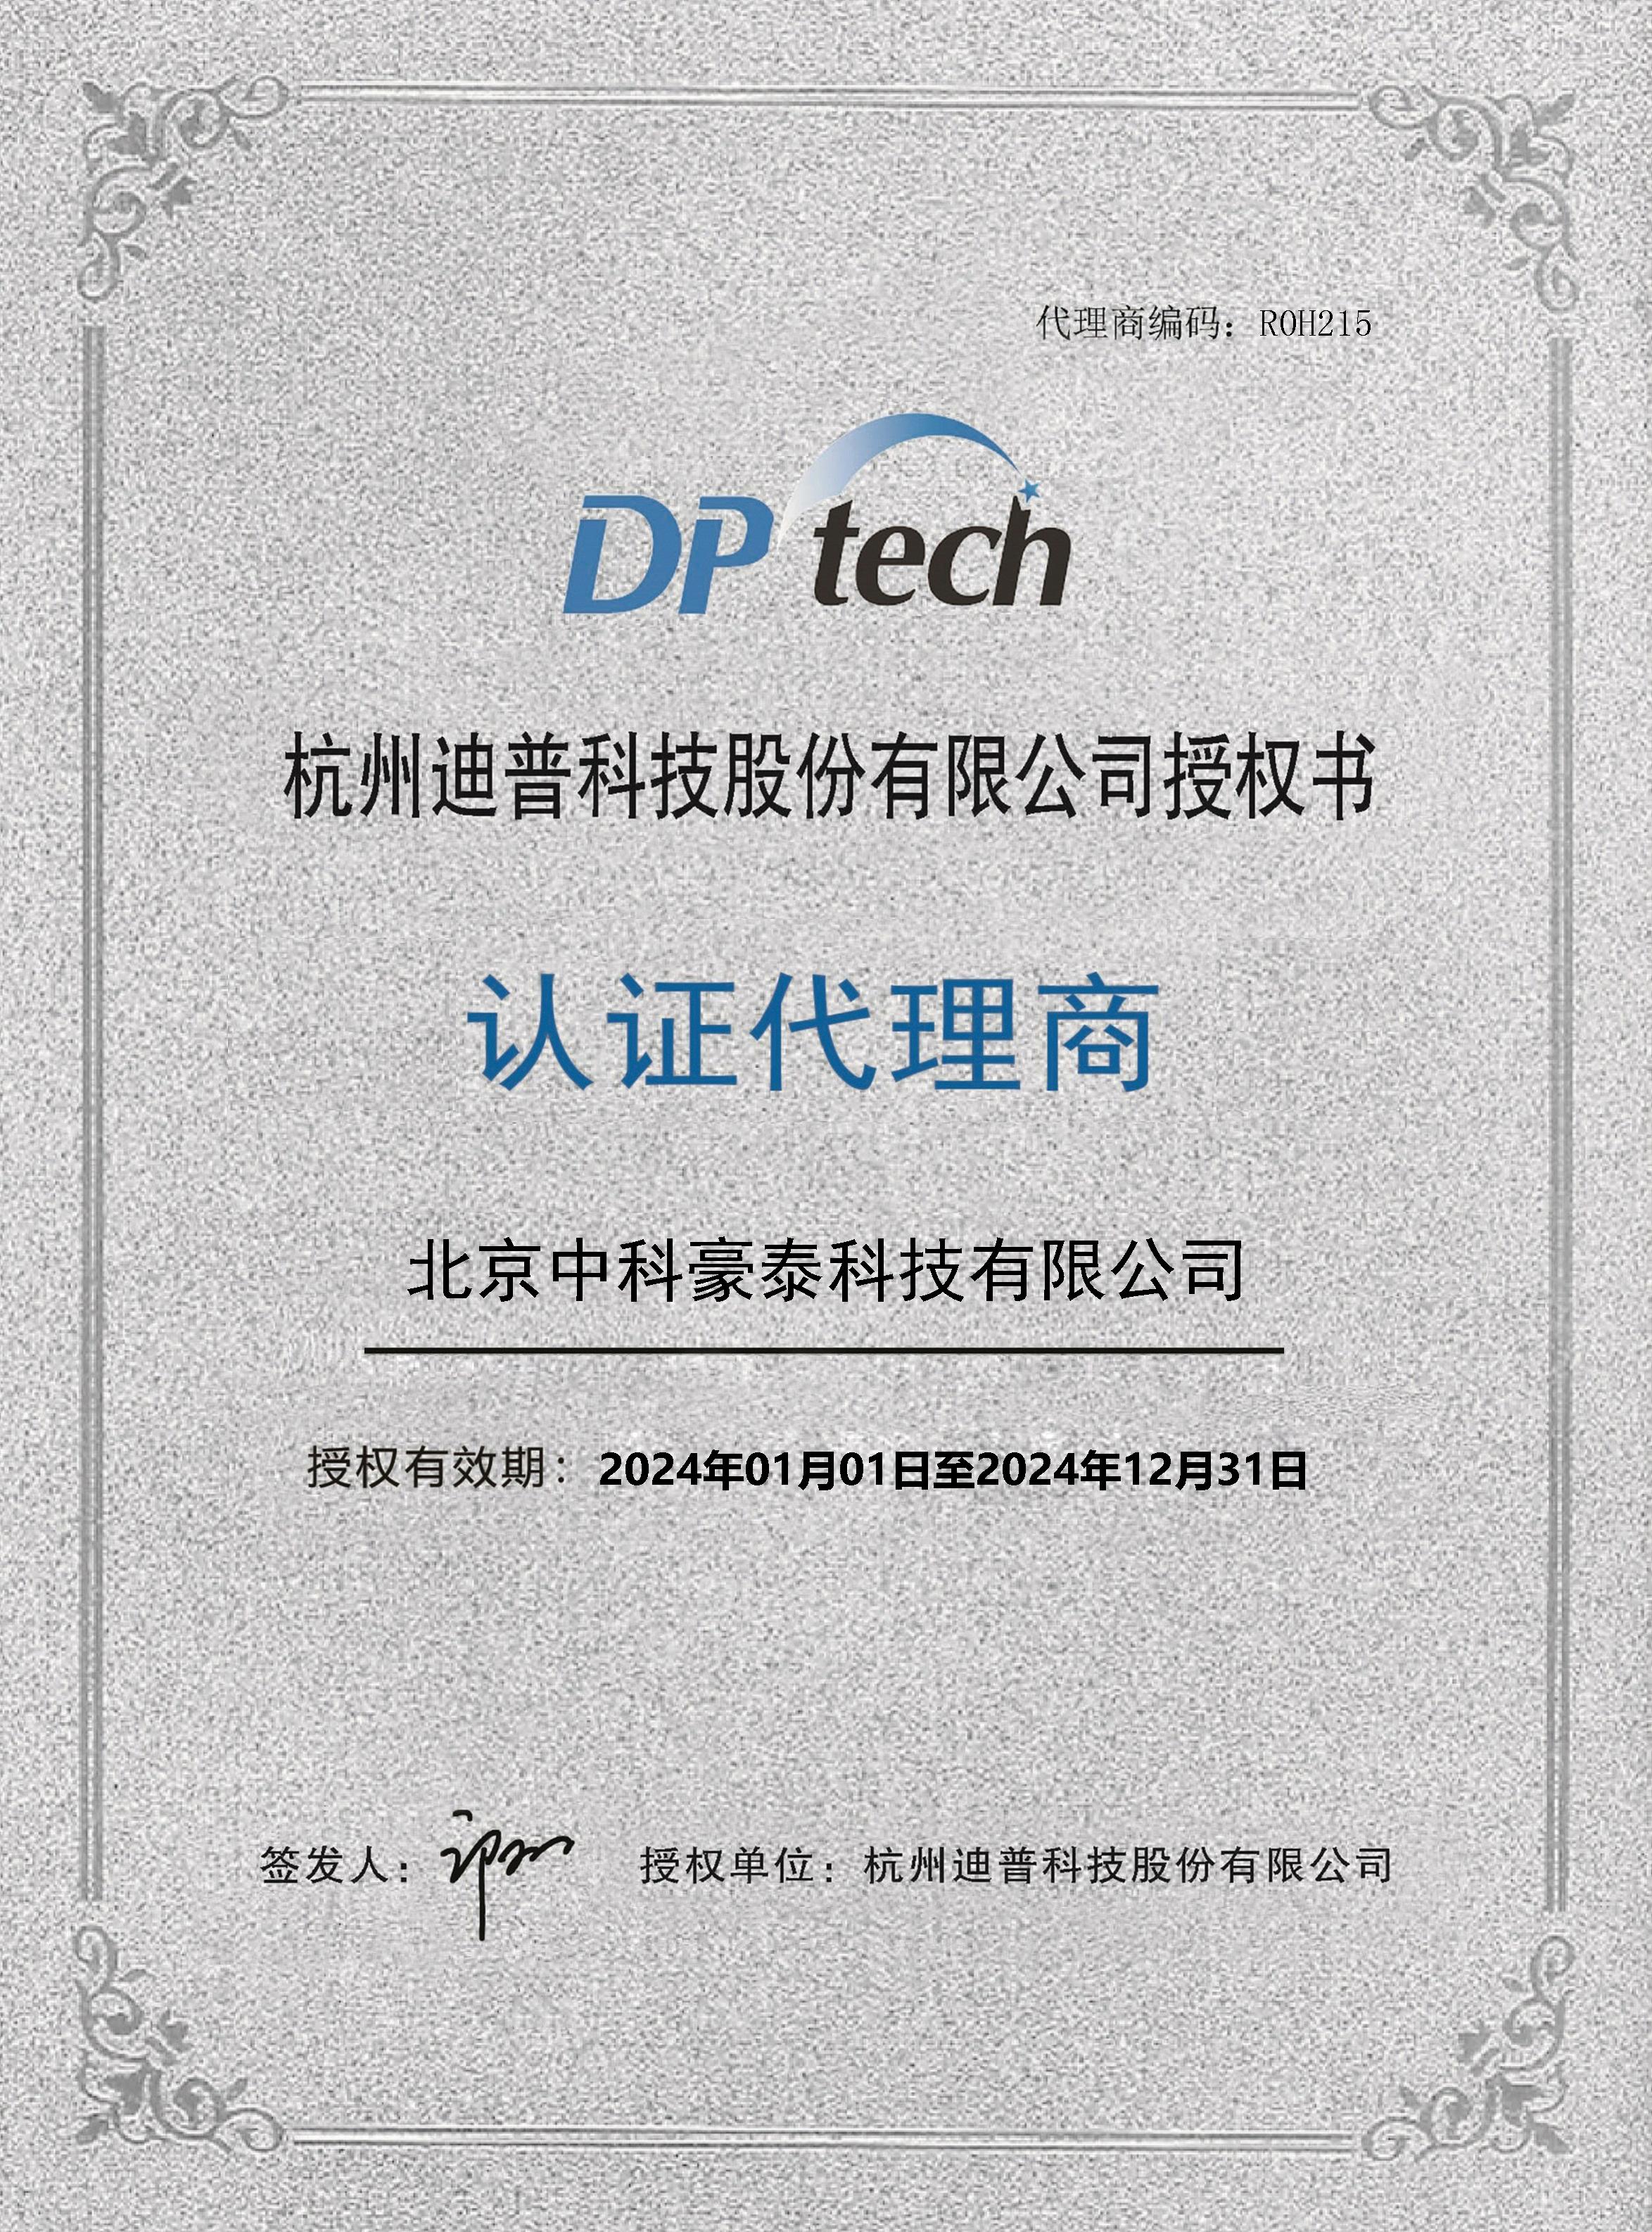 杭州迪普科技股份有限公司授权书认证代理商